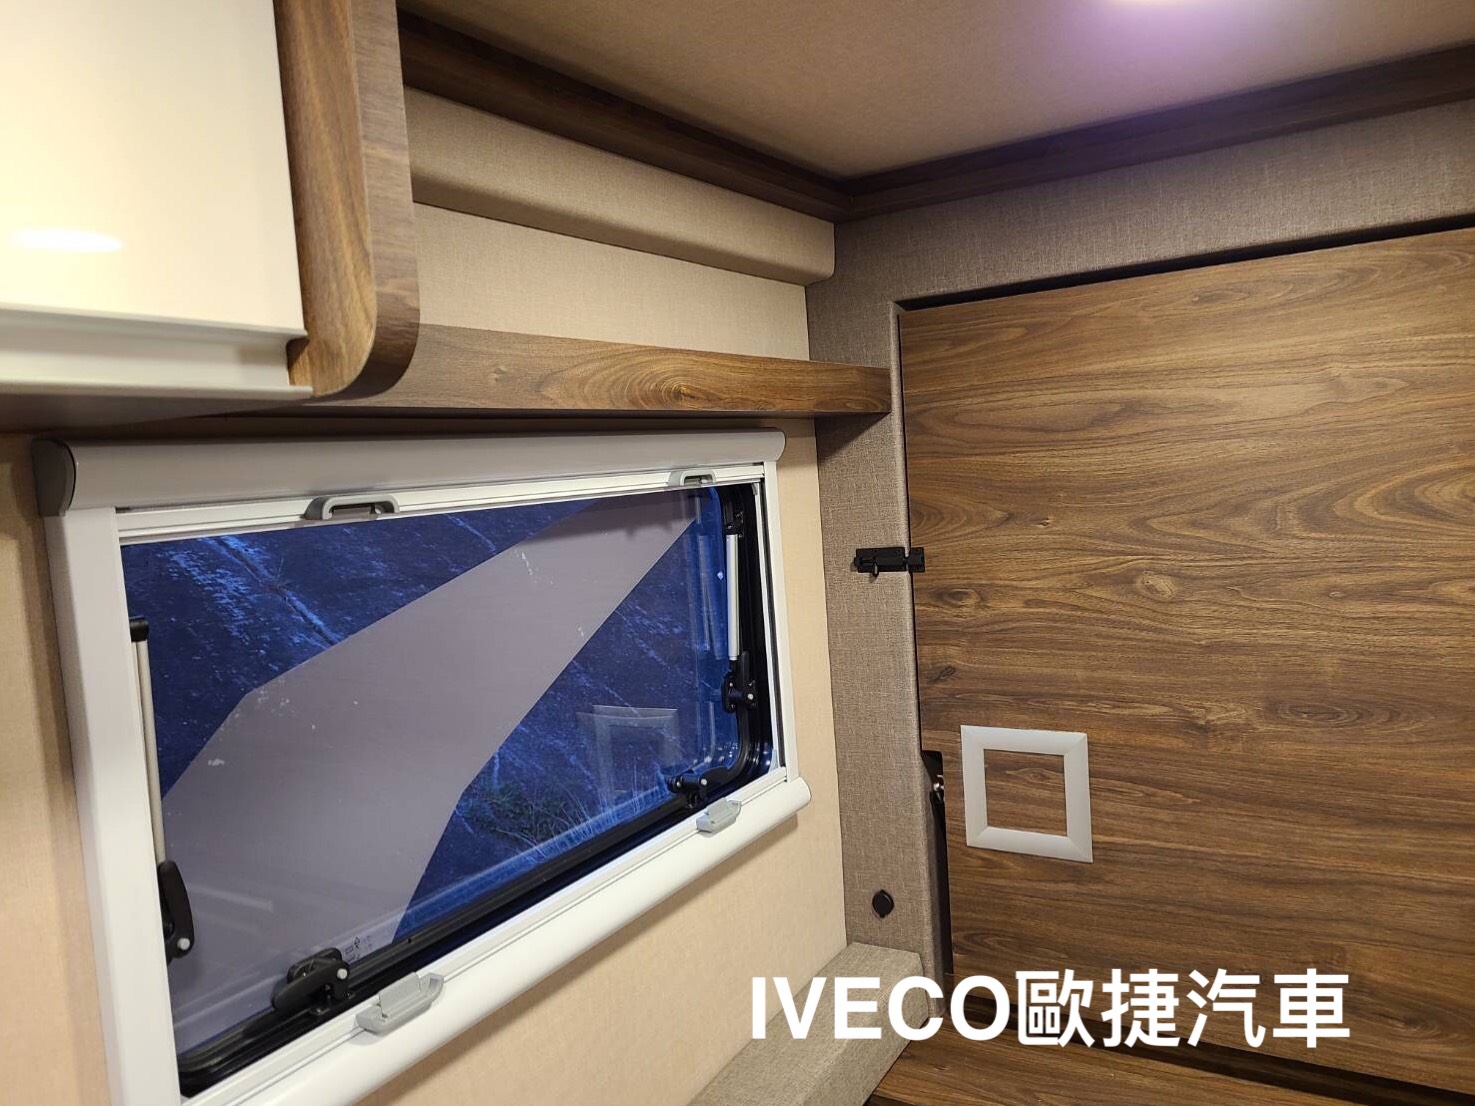 台中露營車改裝將IVECO打造成旅遊露營小幫手